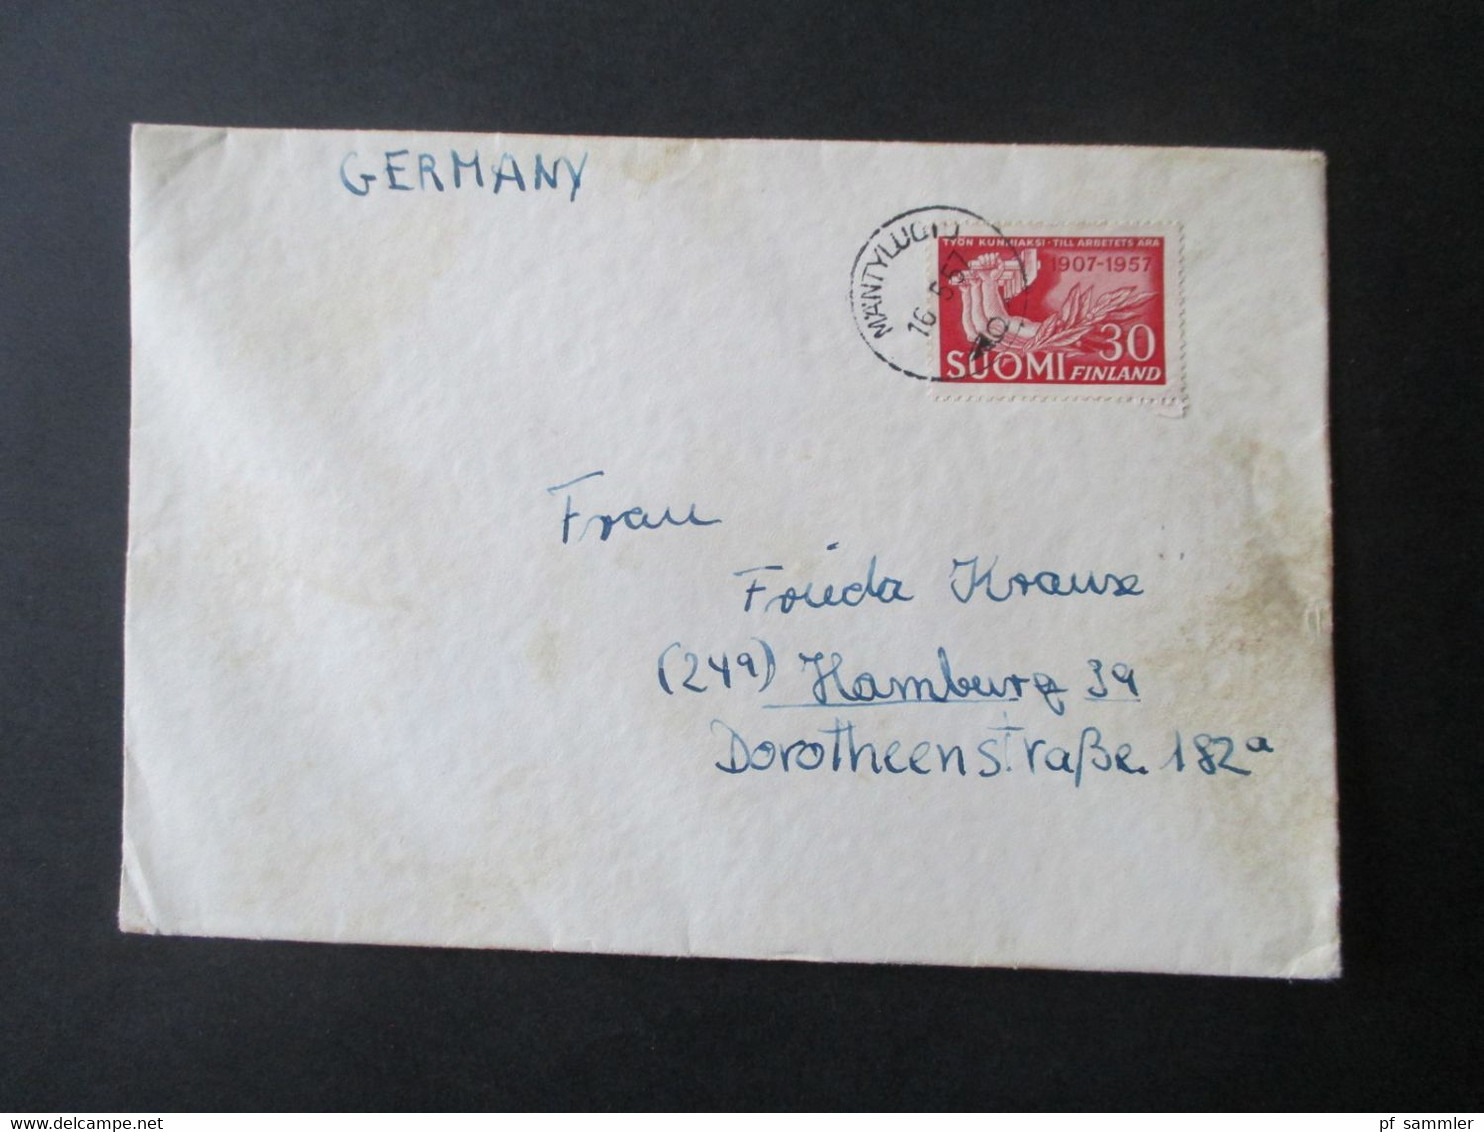 Finnland 1949 - 60er Jahre Auslandsbriefe / Luftpost 16 Belege + 4 moderne Briefe! Schöne Umschläge / 1x Freistempel